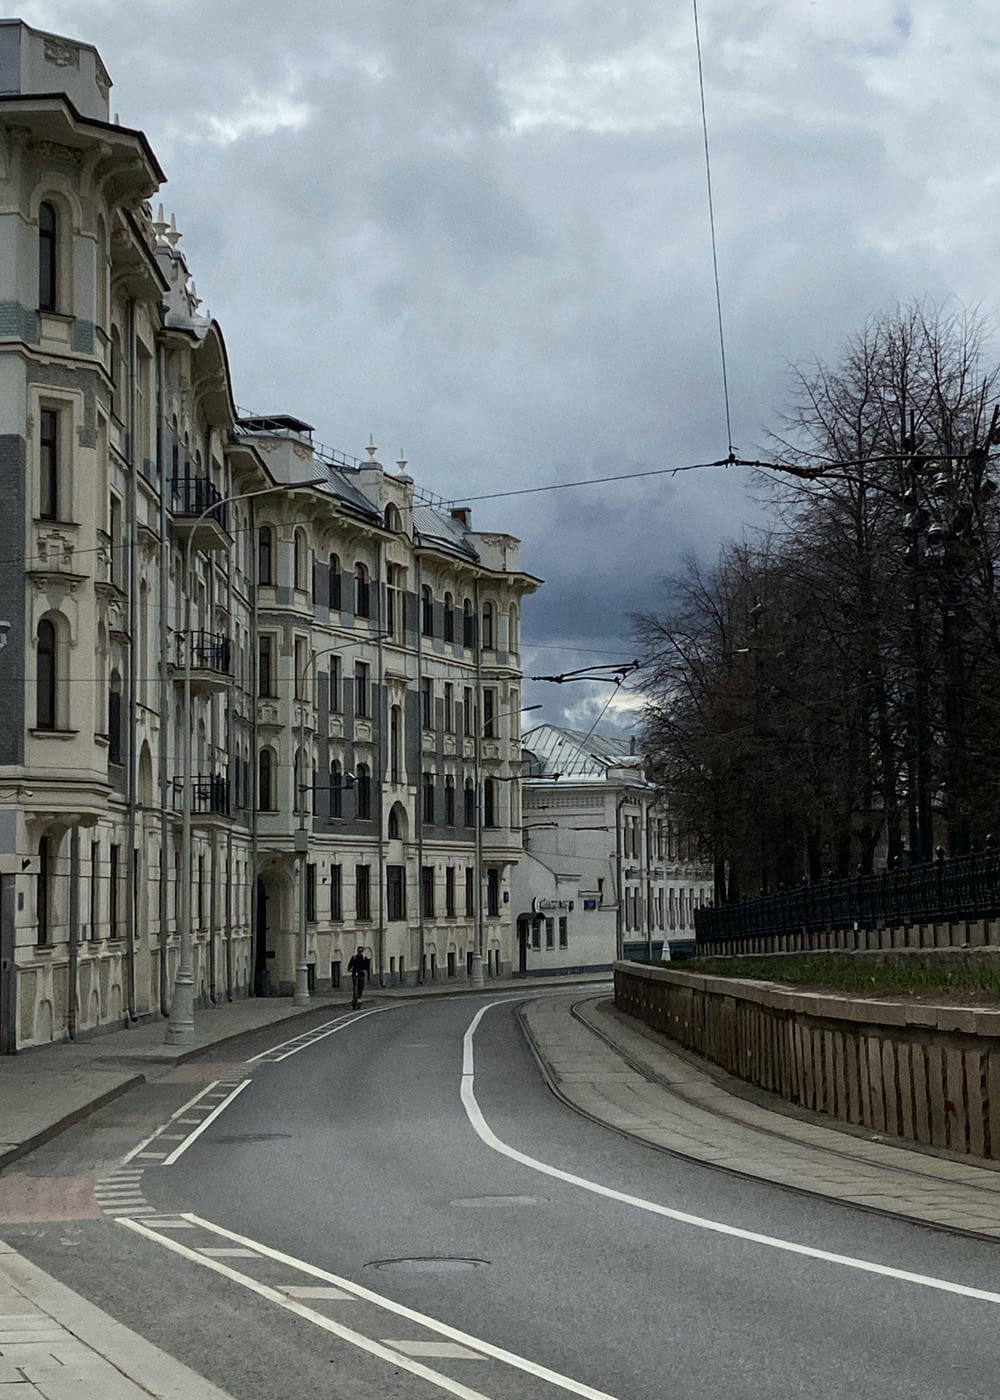 an empty street in a european city